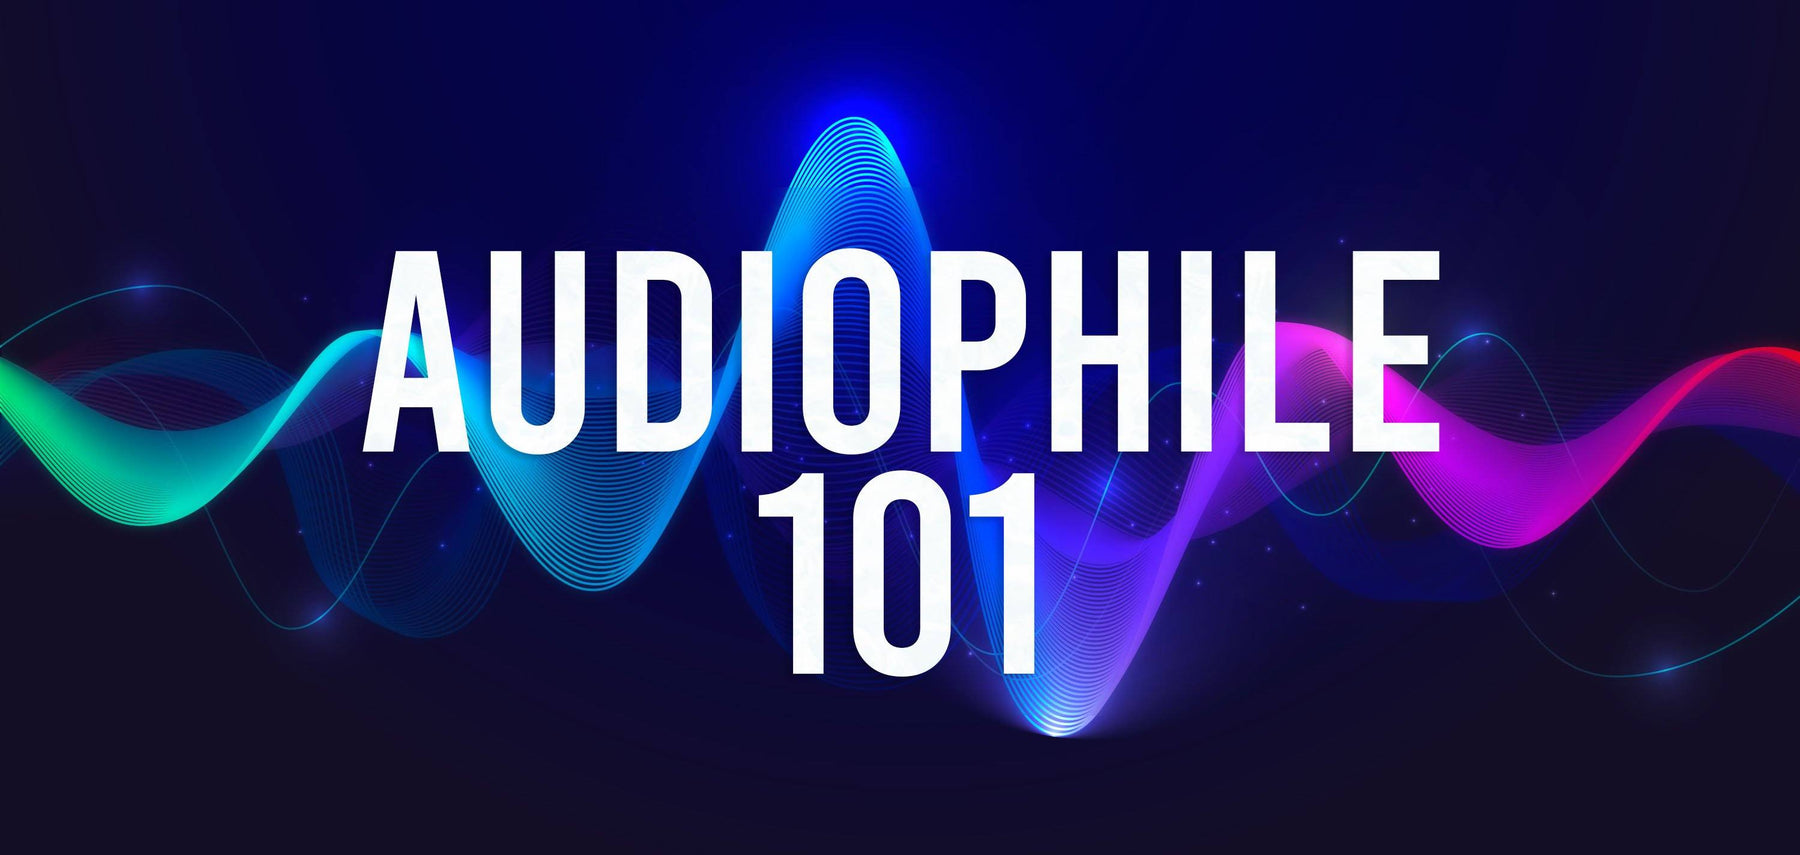 Audiophile's tale: Audiophile terminology 101